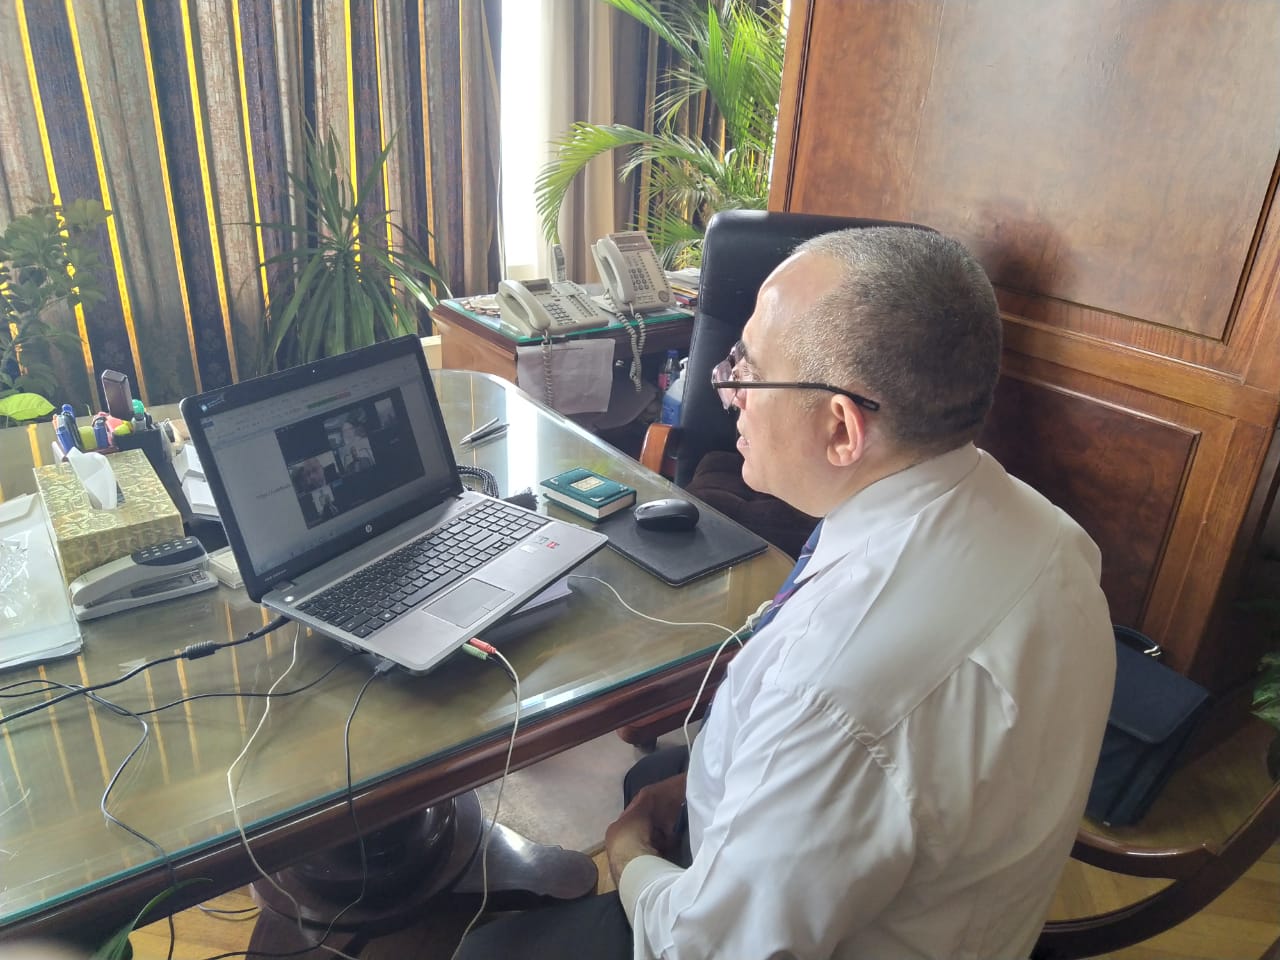 وزير الرى يجتمع مع قيادات الوزارة بالفيديو كونفرانس  (2)